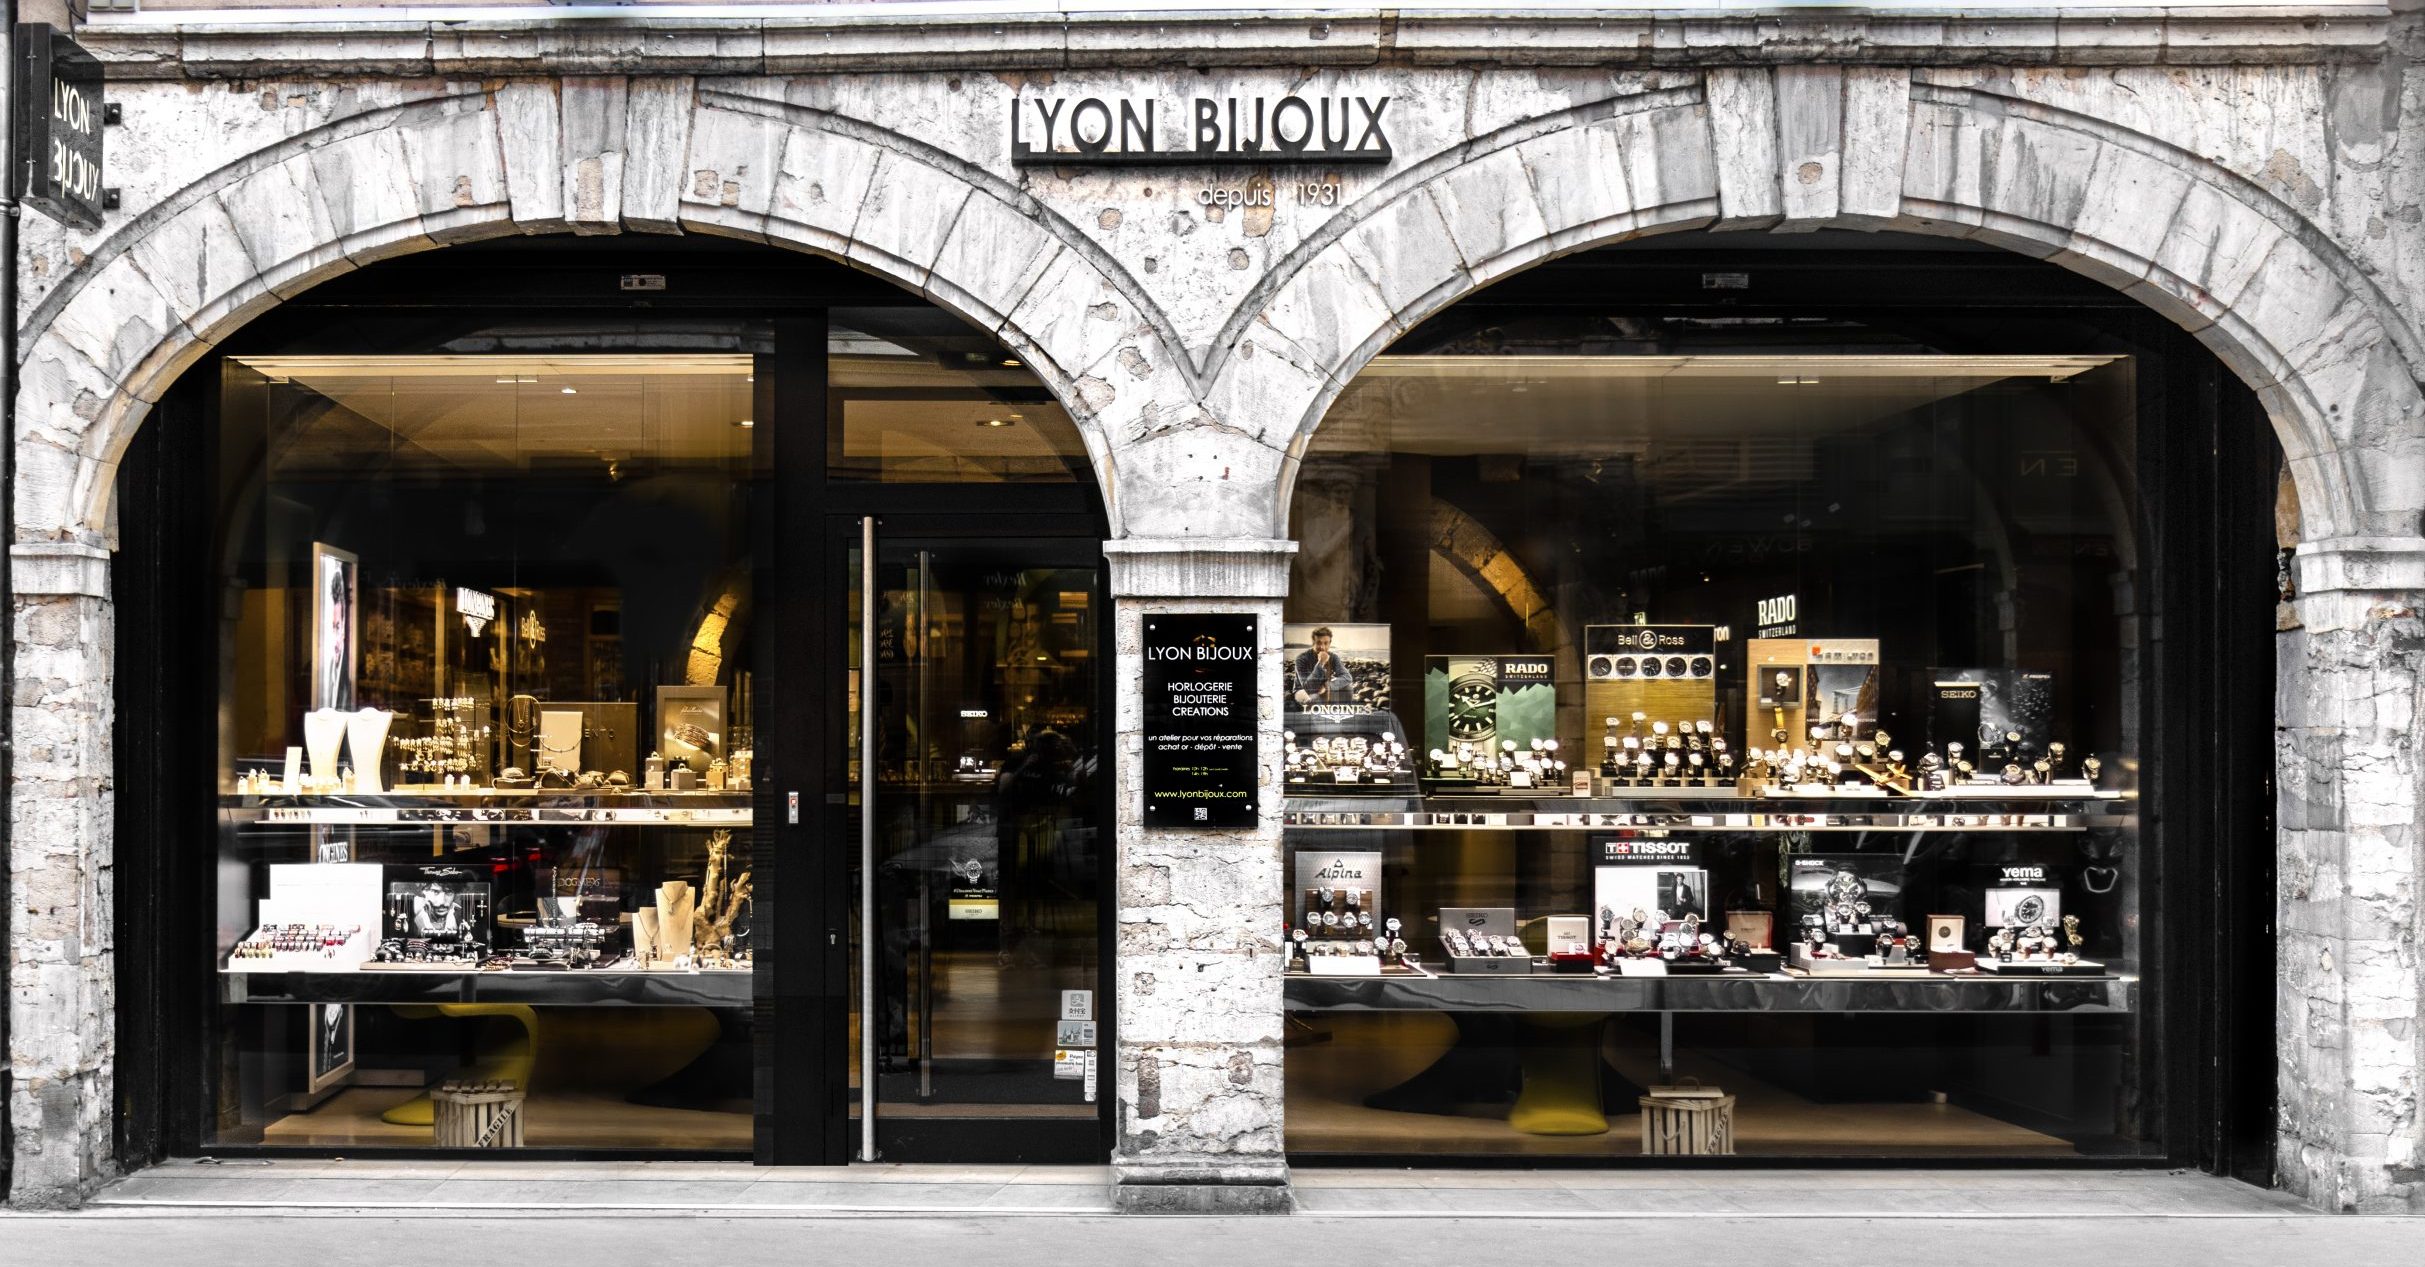 Boutique Lyon Bijoux